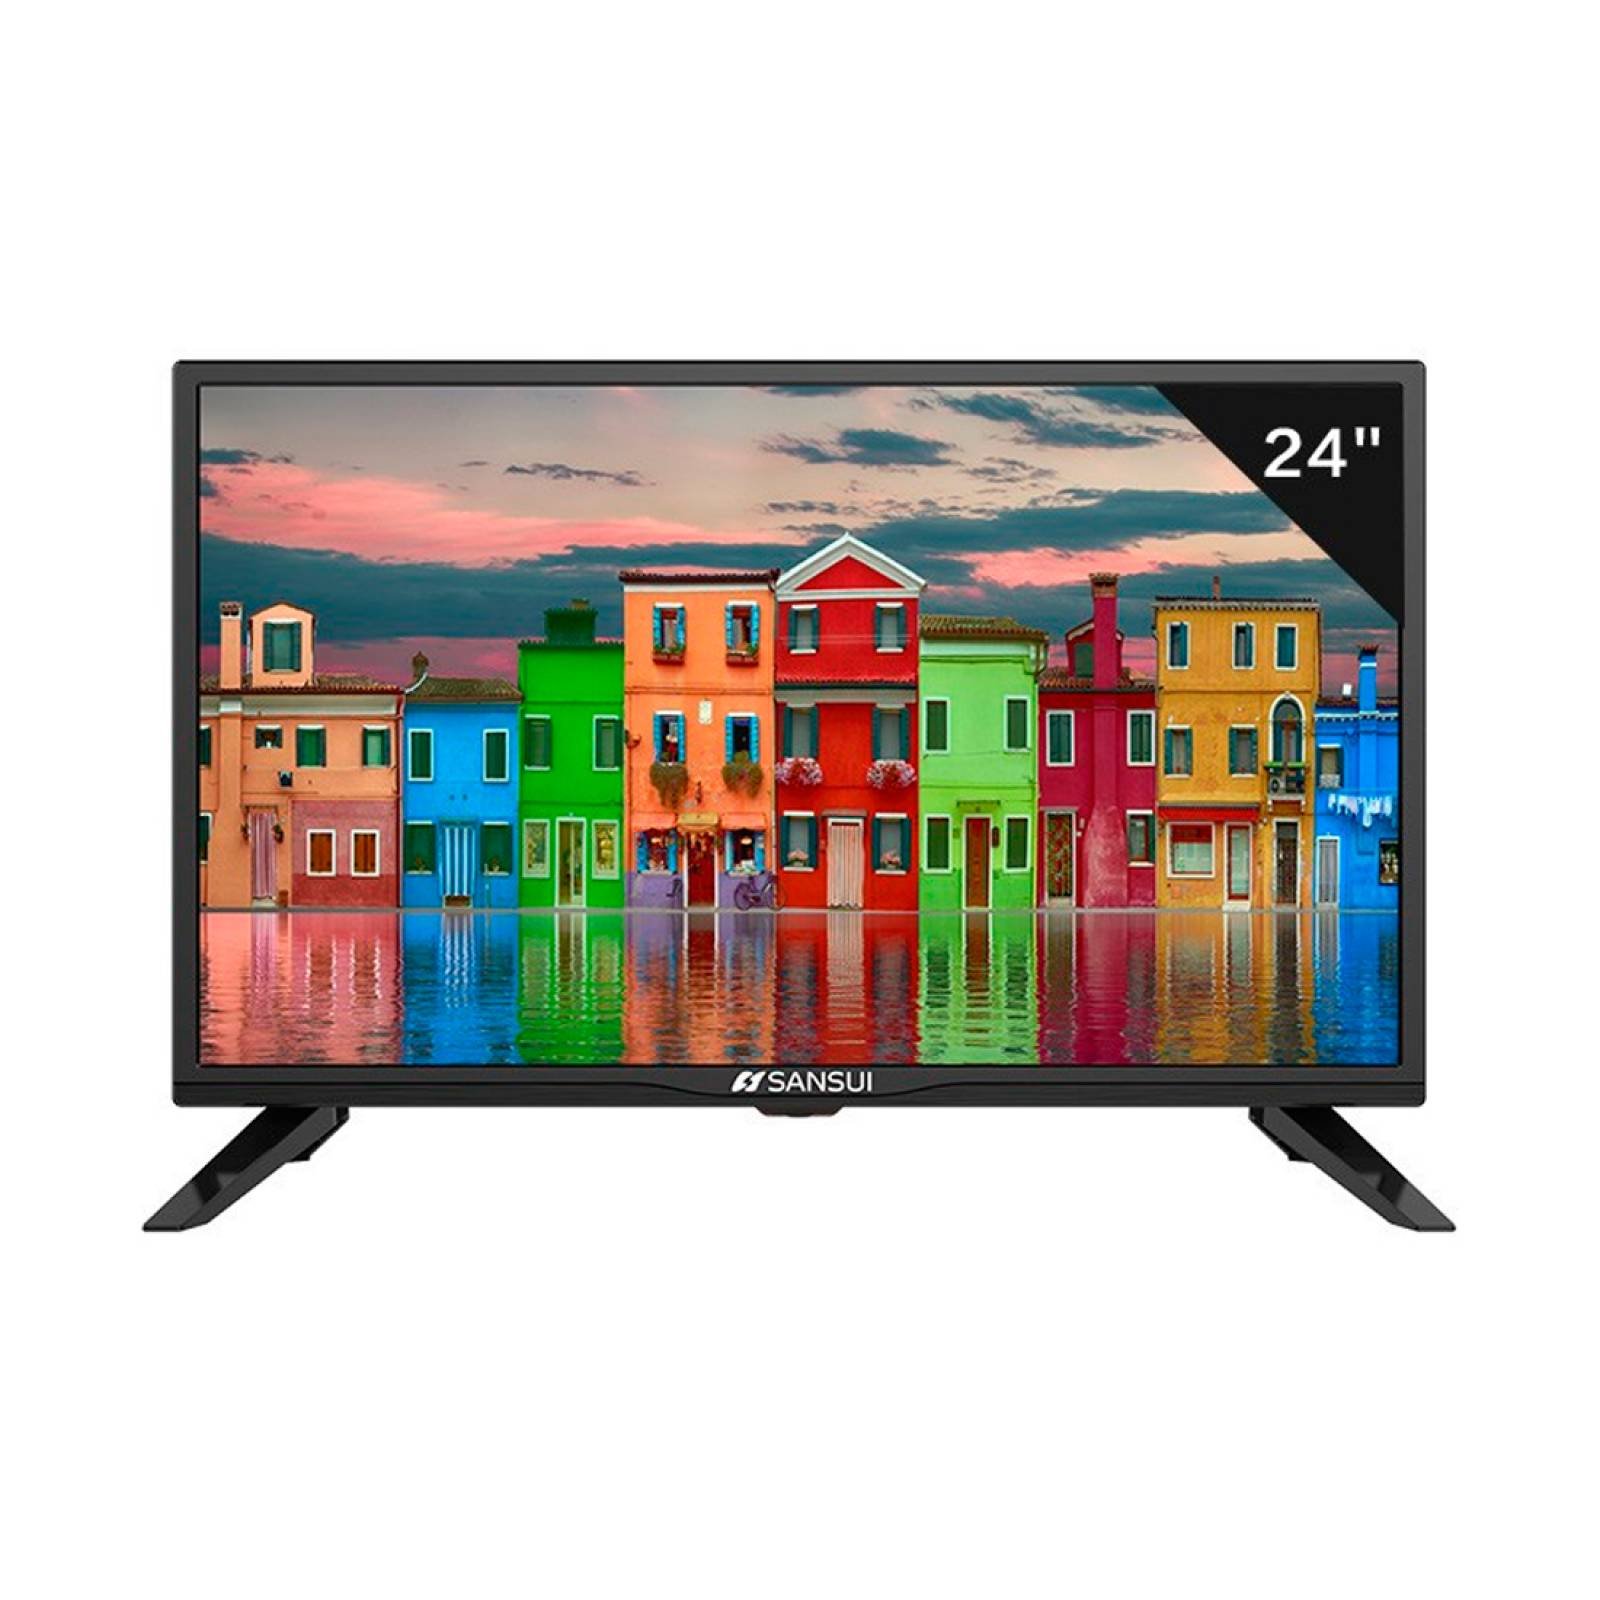 Smart TV 24 Pul DLED HD 60Hz 4Core SMX24Z1SM/NEG Sansui